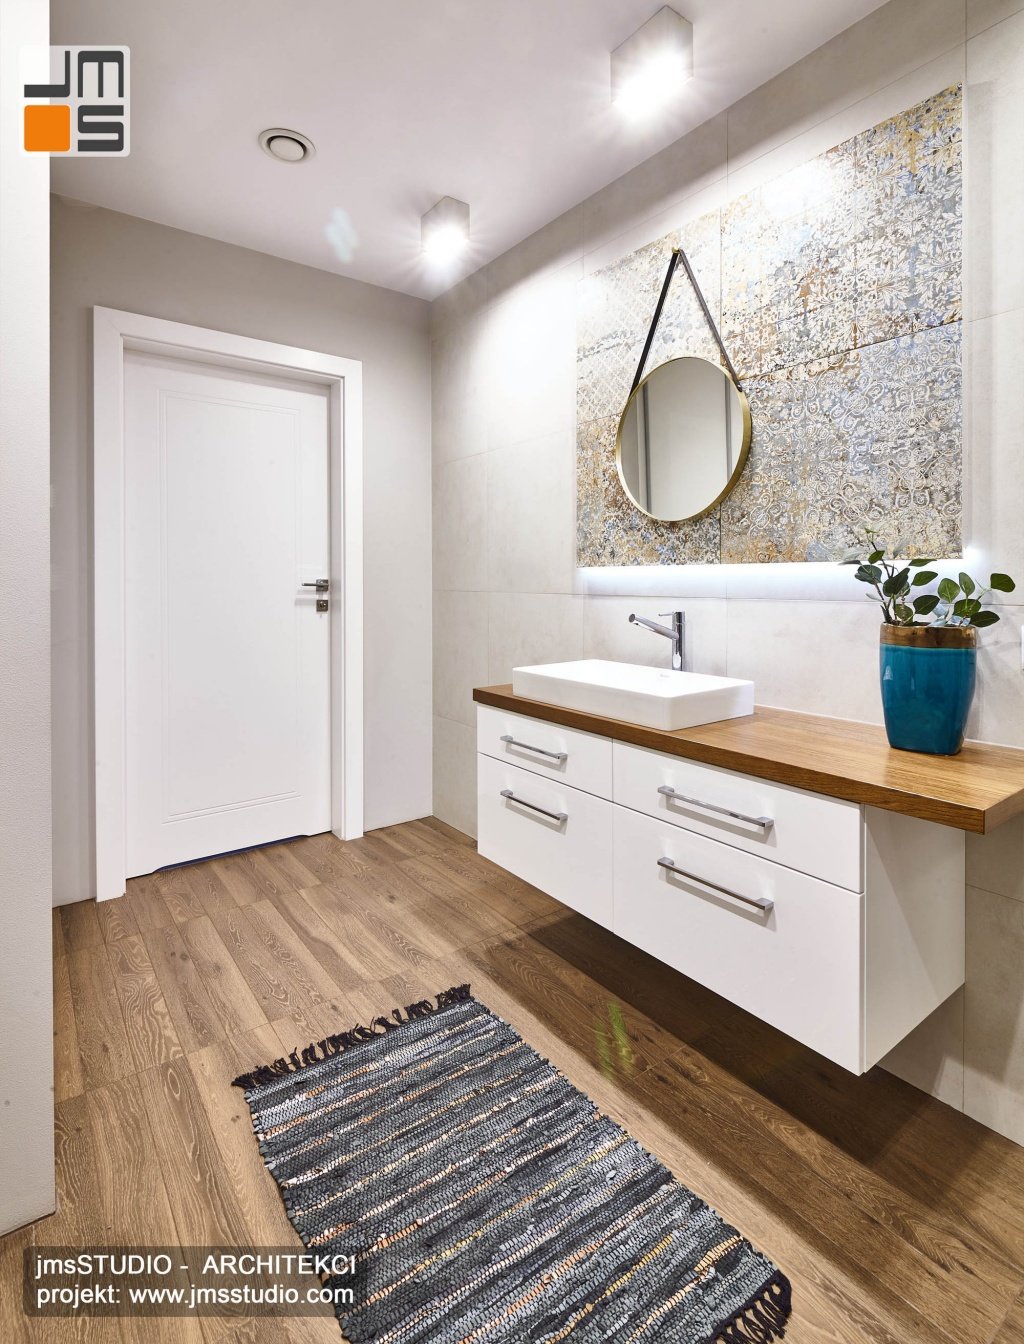 Drewniana podłoga w łaziance dodaje wnętrzu ciepła i sprawia że projekt wnętrz i wnętrze wyglądają bardzo elegancko. 